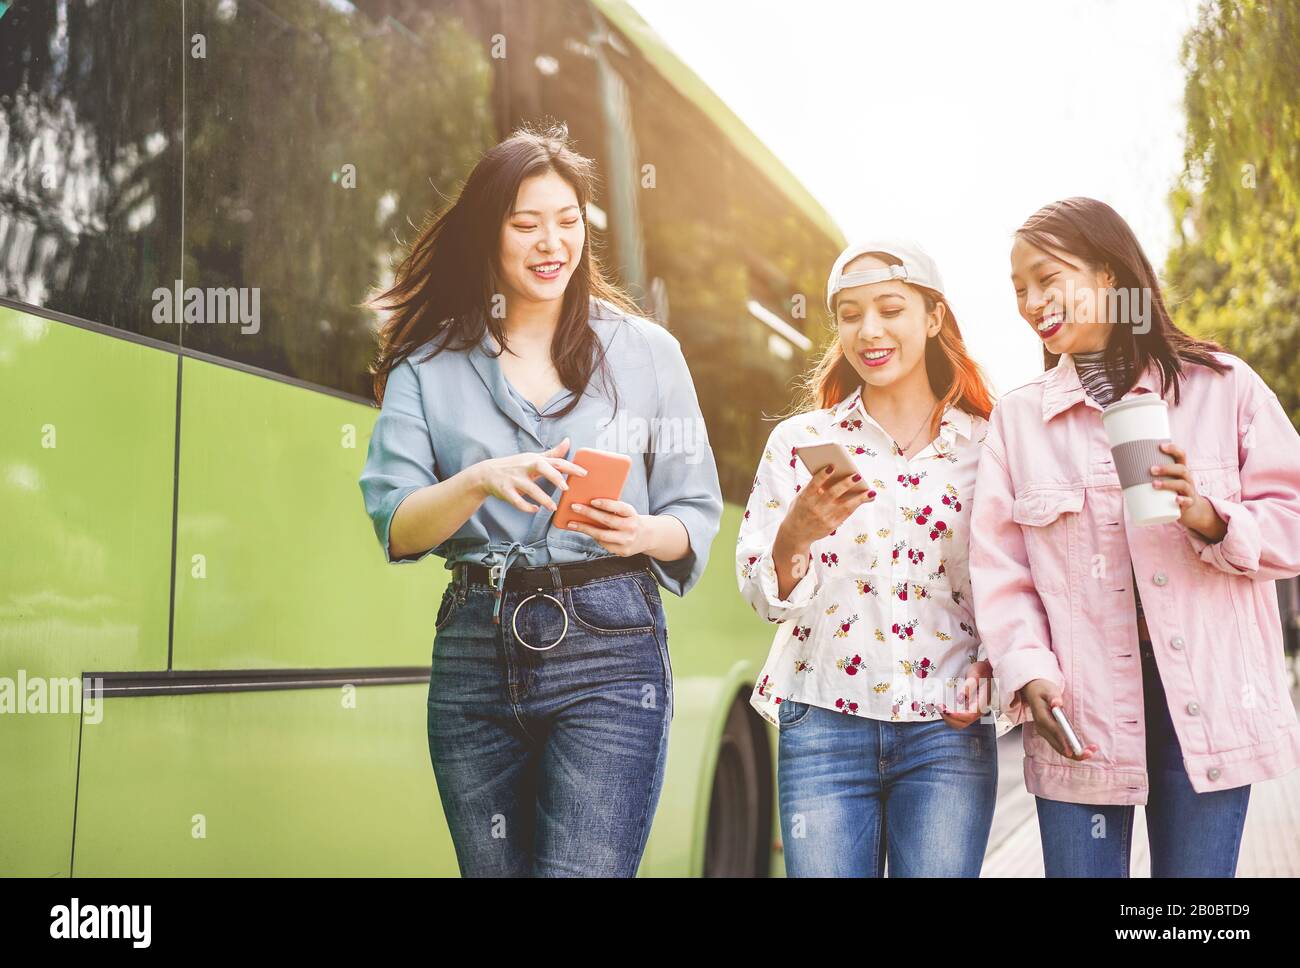 Fröhliche asiatische Freunde, die Smartphones am Busbahnhof nutzen - Junge Studenten, die sich nach der Schule im Freien über Technologietrends lustig machen - Freundschaft, Univ Stockfoto